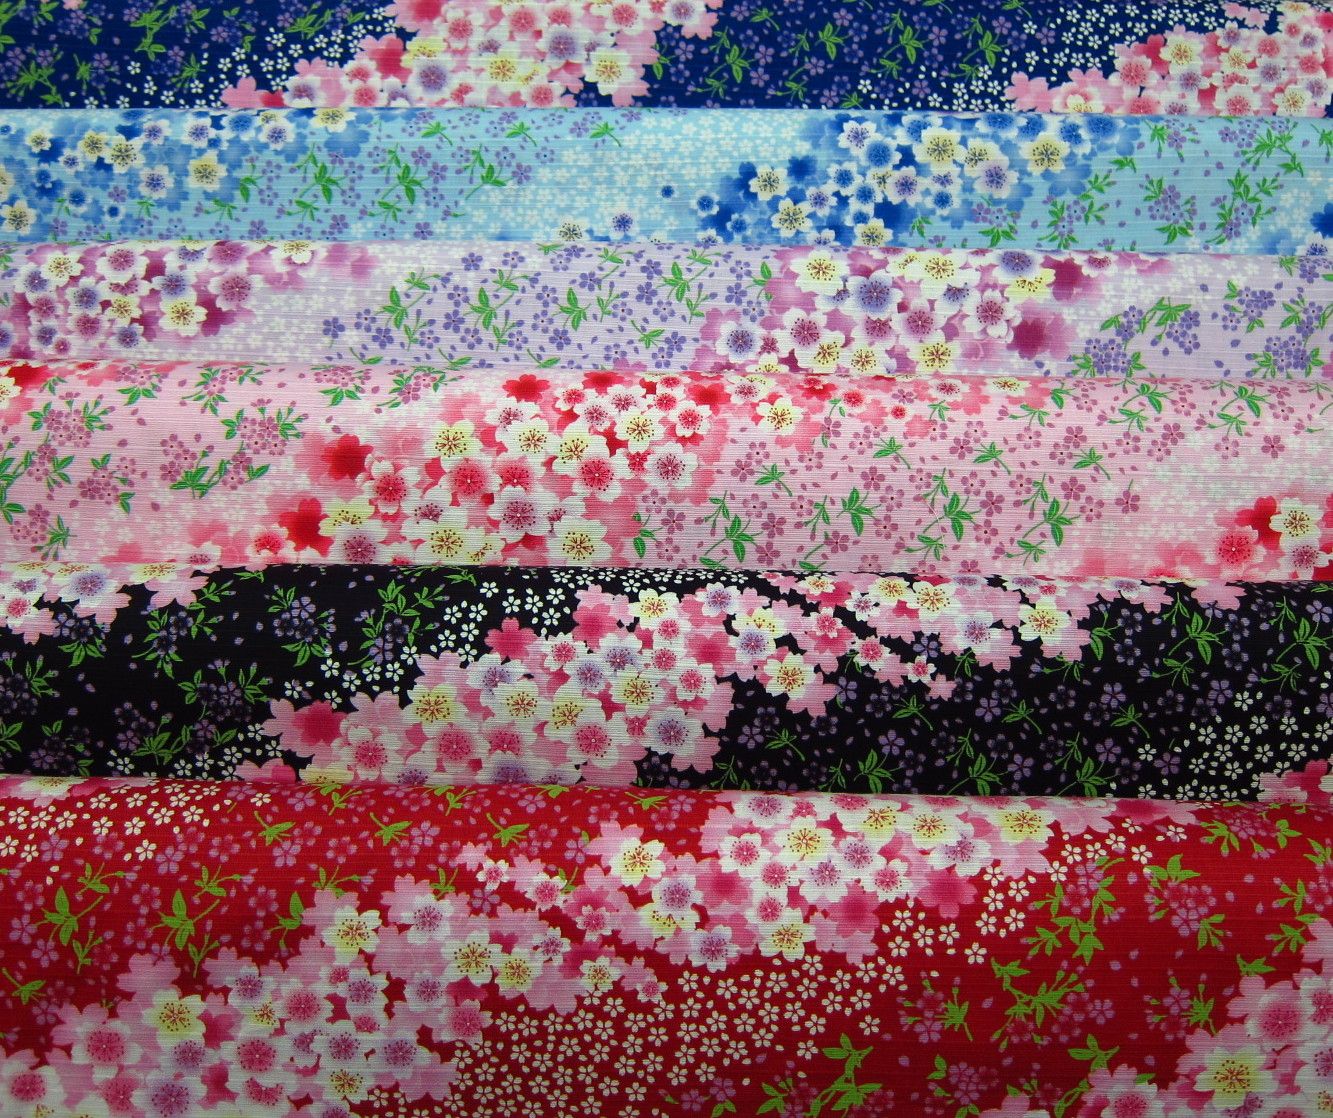 日本進口竹節綿布-群櫻紛飛時-紅、黑、粉、淺紫、水藍、深藍-100%純綿、日本製造